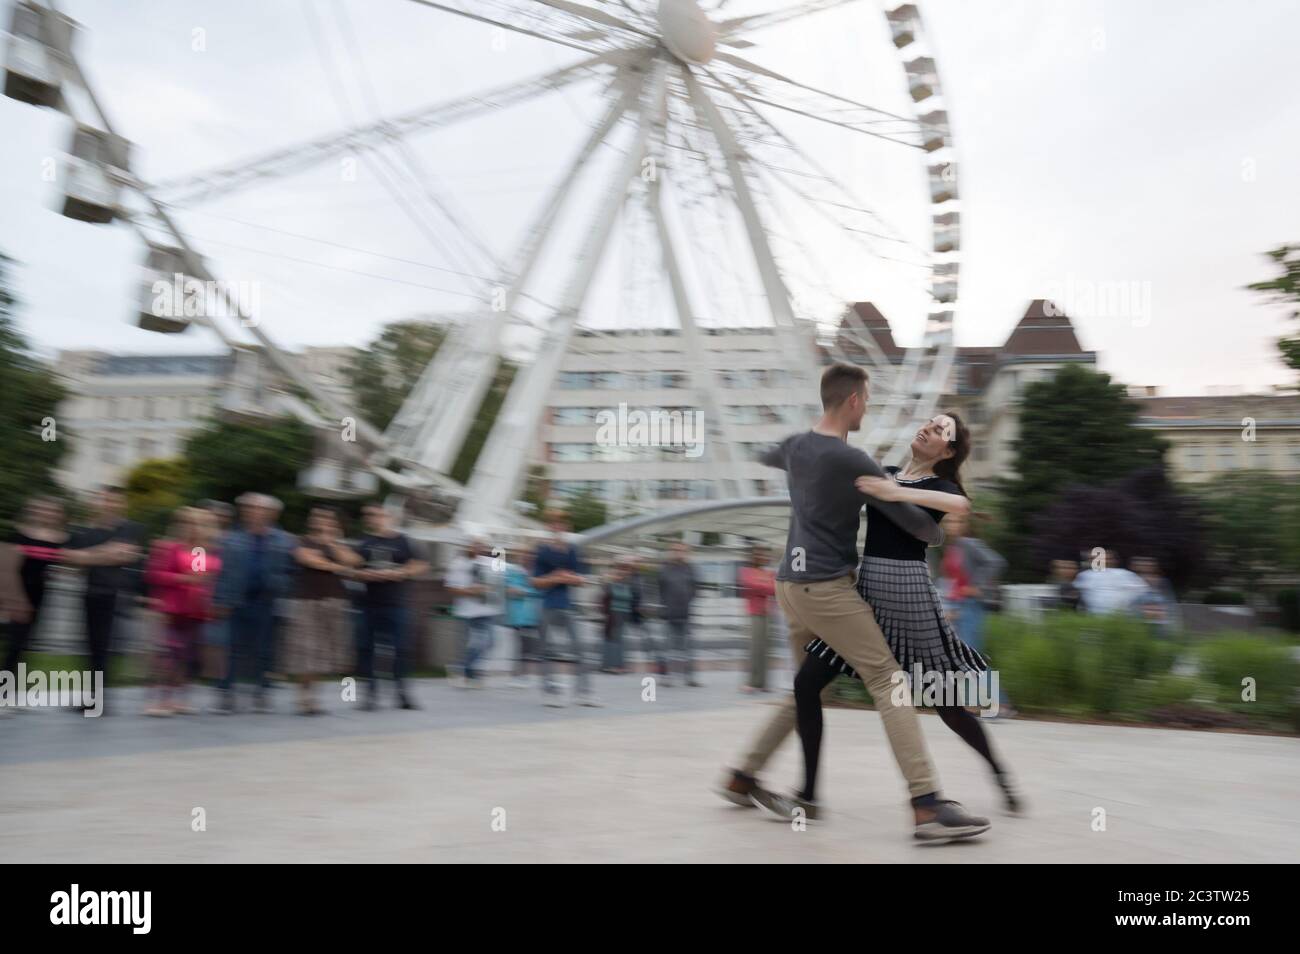 Budapest, Hongrie. 21 juin 2020. Les gens profitent d'une fête de danse sociale sur une place publique après la levée des restrictions COVID-19 dans le centre-ville de Budapest, en Hongrie, le 21 juin 2020. Crédit: Attila Volgyi/Xinhua/Alay Live News Banque D'Images